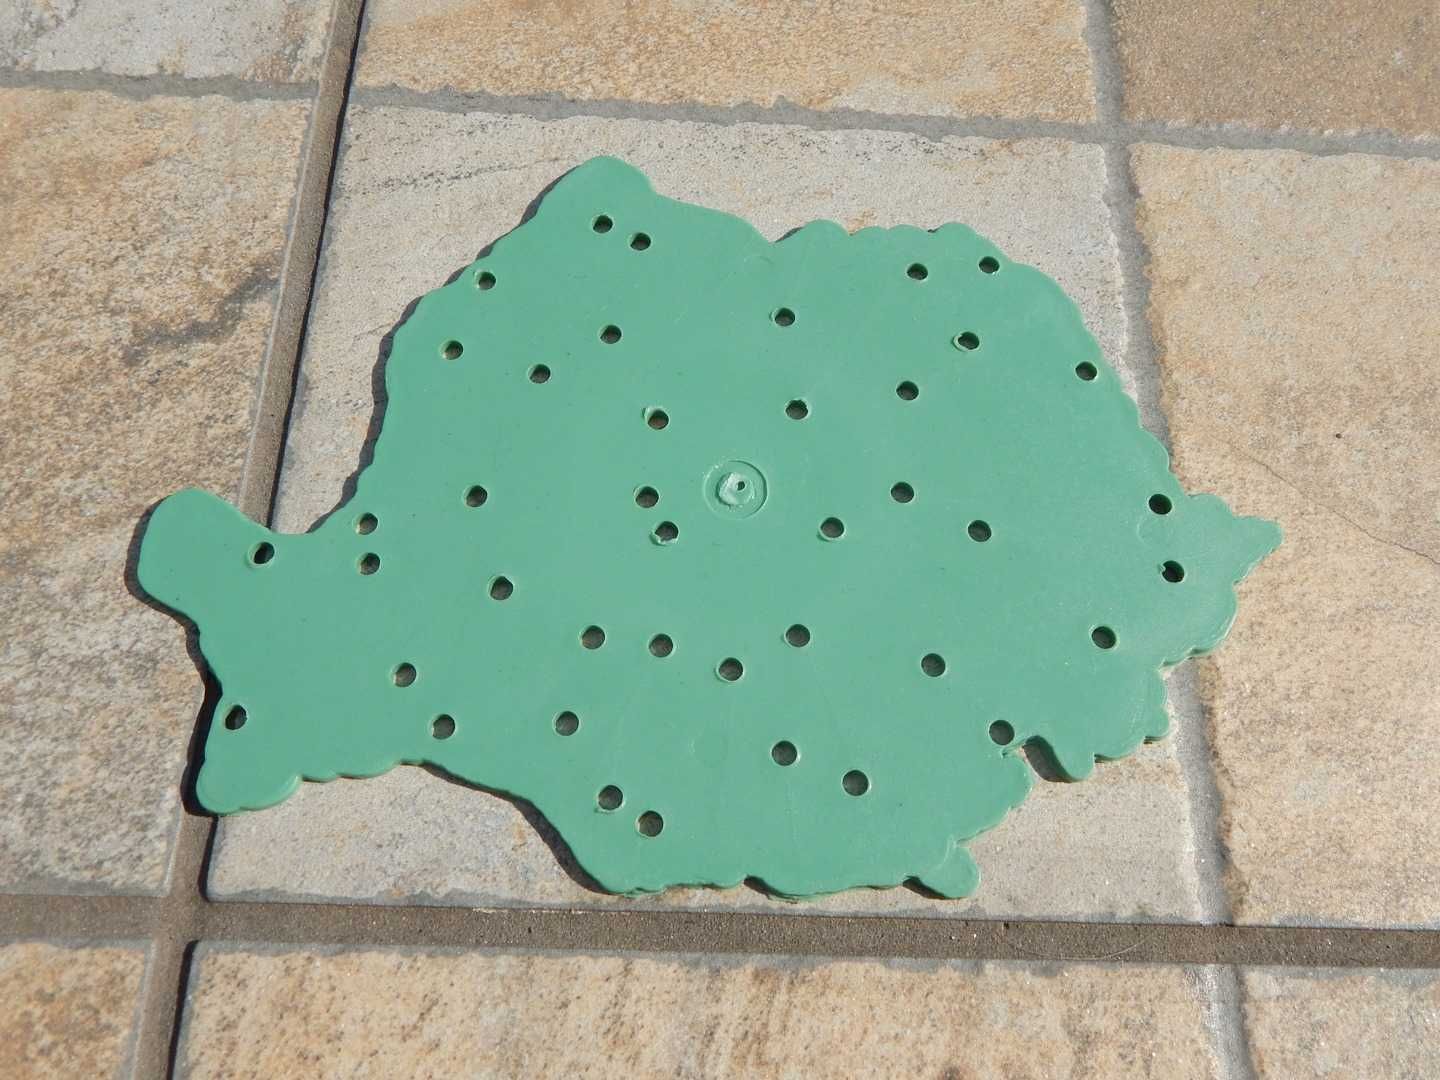 Sablon plastic dur harta Romania cu orase (f. rar - varianta verde)